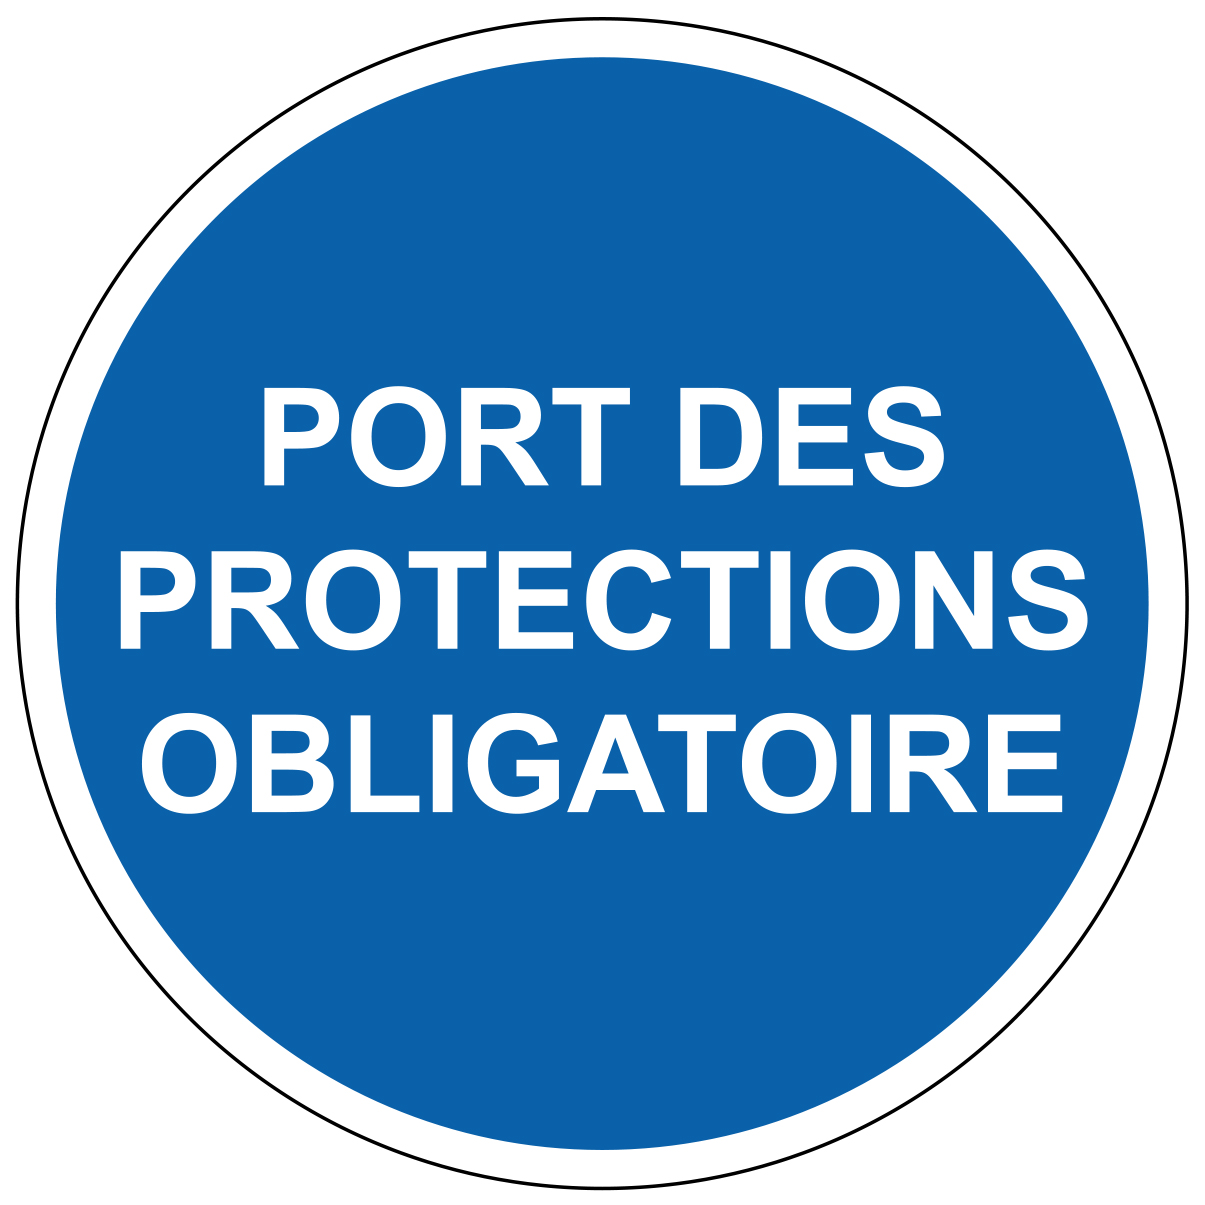 Port de protections obligatoire